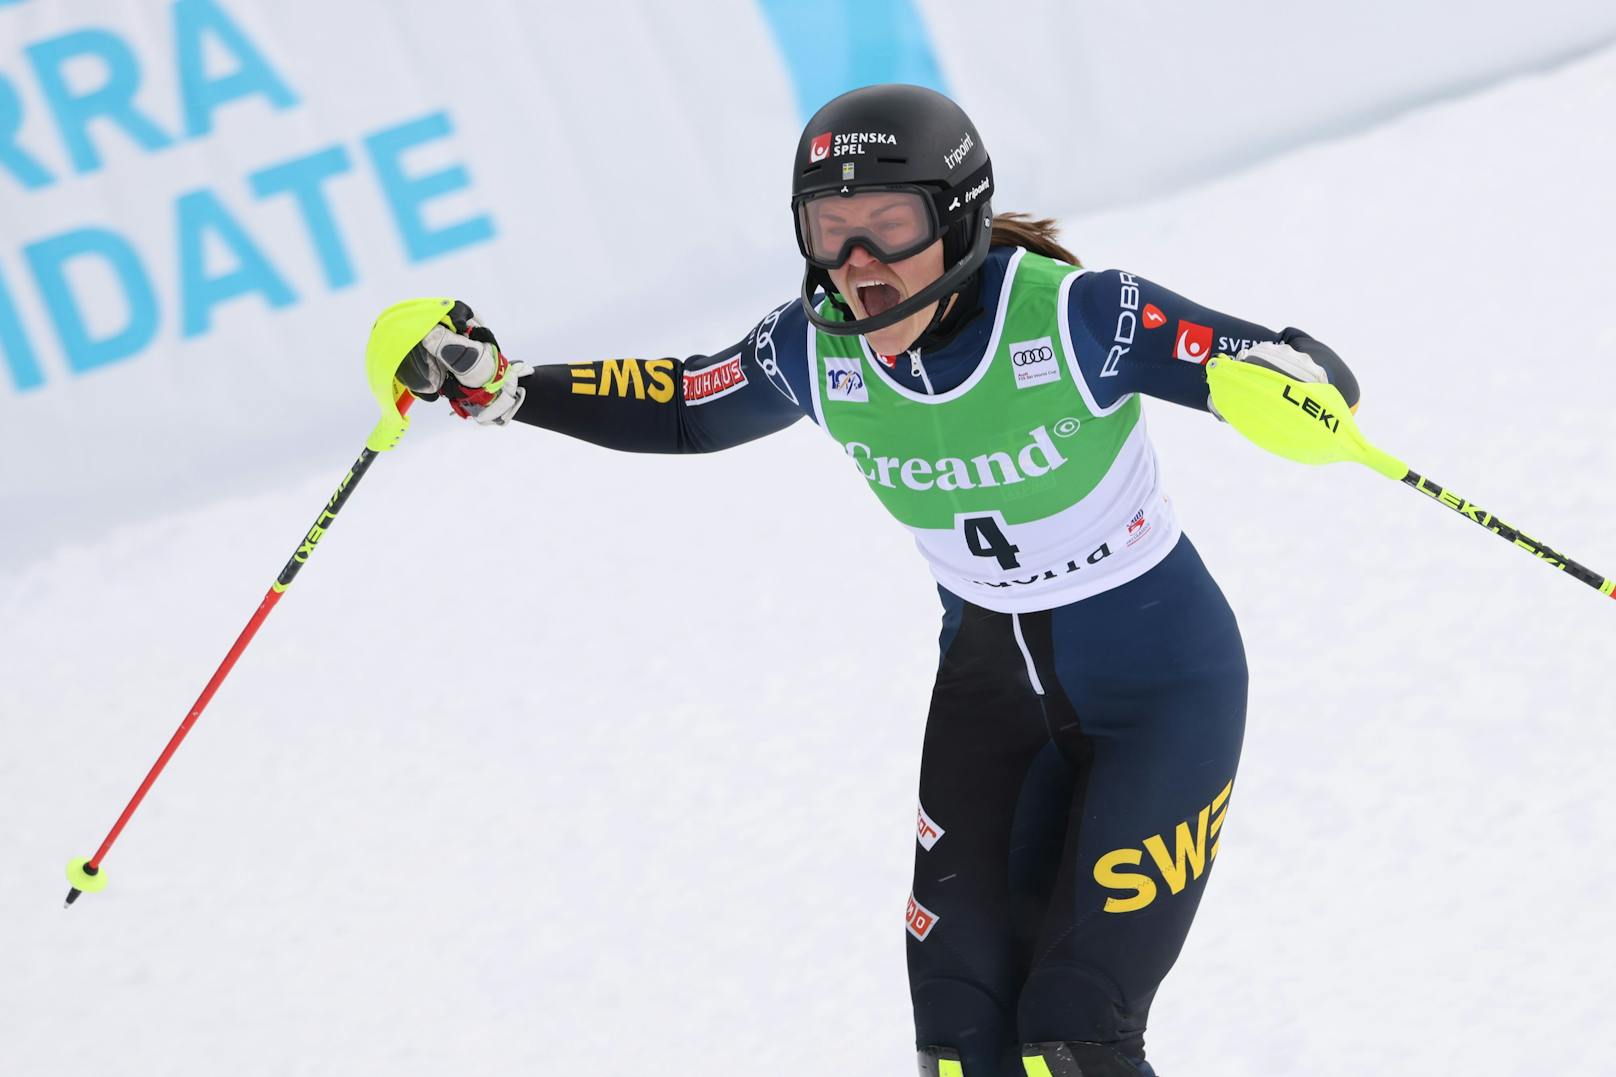 Die Schwedin Anja Swenn-Larsson sicherte sich im Slalom von Soldeu ihren zweiten Weltcup-Sieg vor der Kroatin Zrinka Ljutic und Paula Moltzan aus den USA. Mit Katharina Truppen und Katharina Liensberger fuhren zwei ÖSV-Stars in die Top-10.